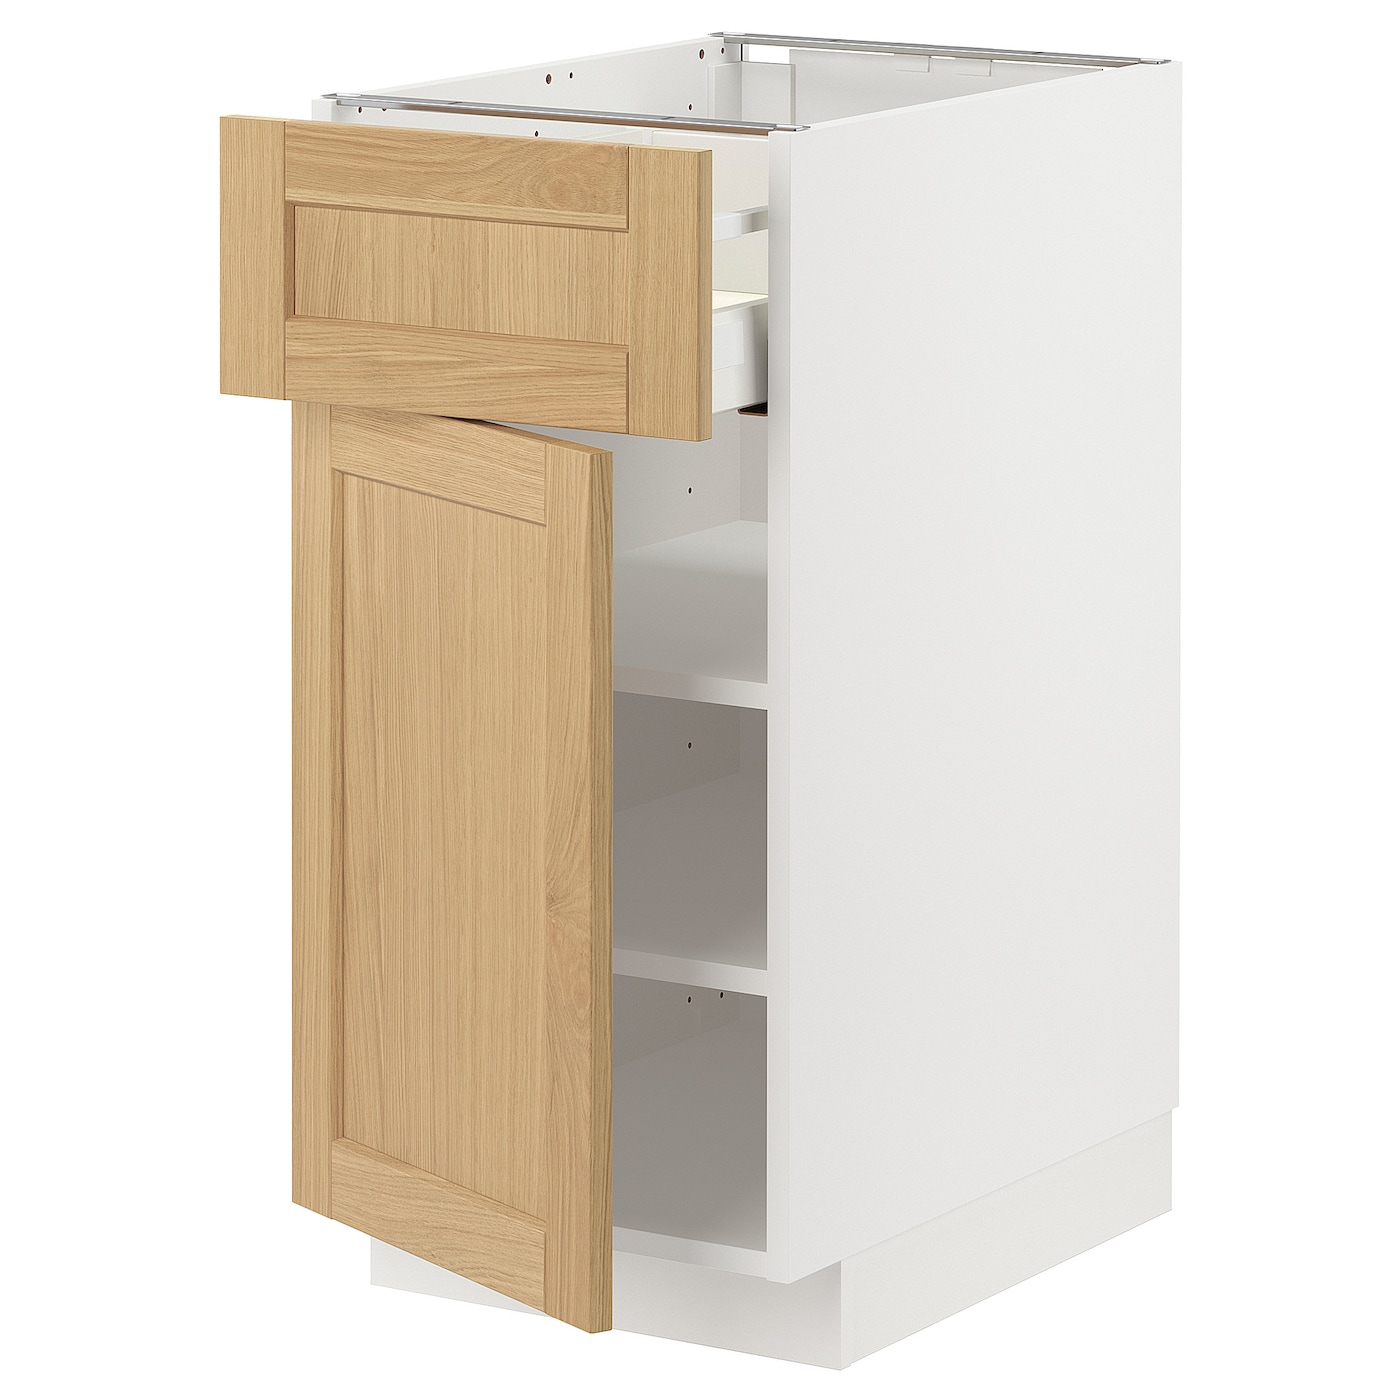 Напольный шкаф - METOD / MAXIMERA IKEA/ МЕТОД/ МАКСИМЕРА ИКЕА,  60х40 см, белый/под беленый дуб